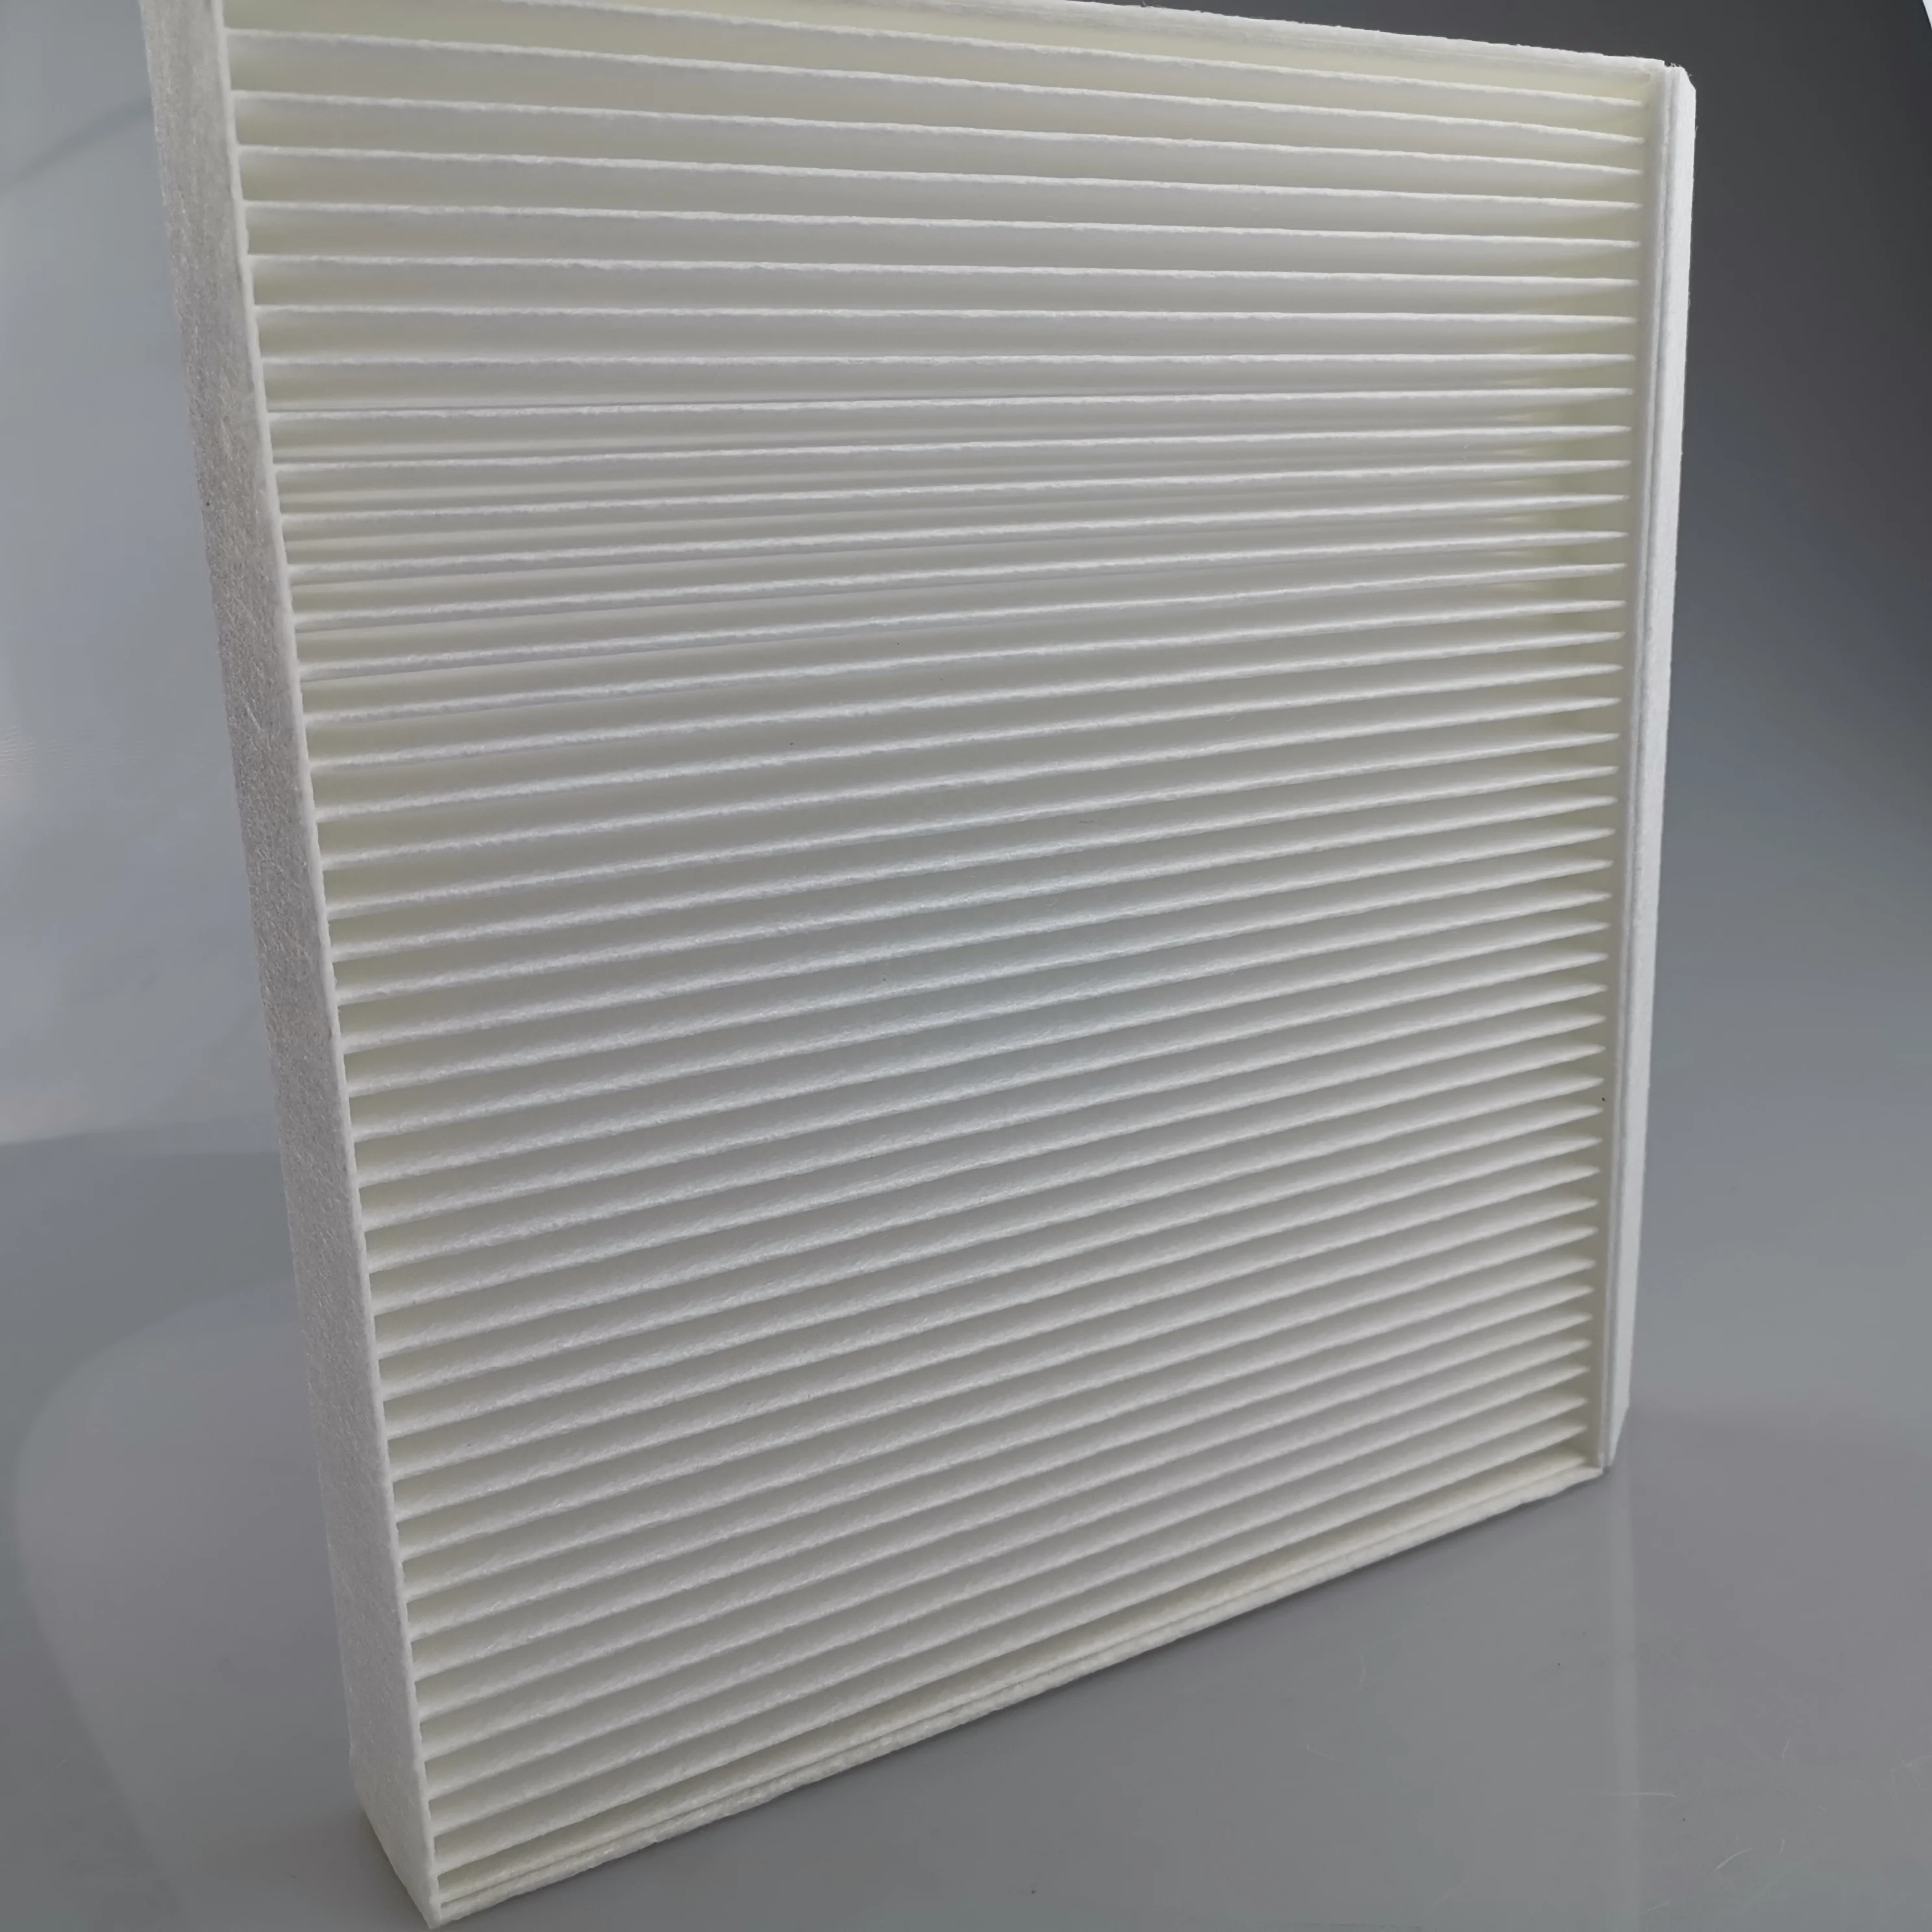 SAIC MAXUS T60 Original automobile air conditioner filter C00089344